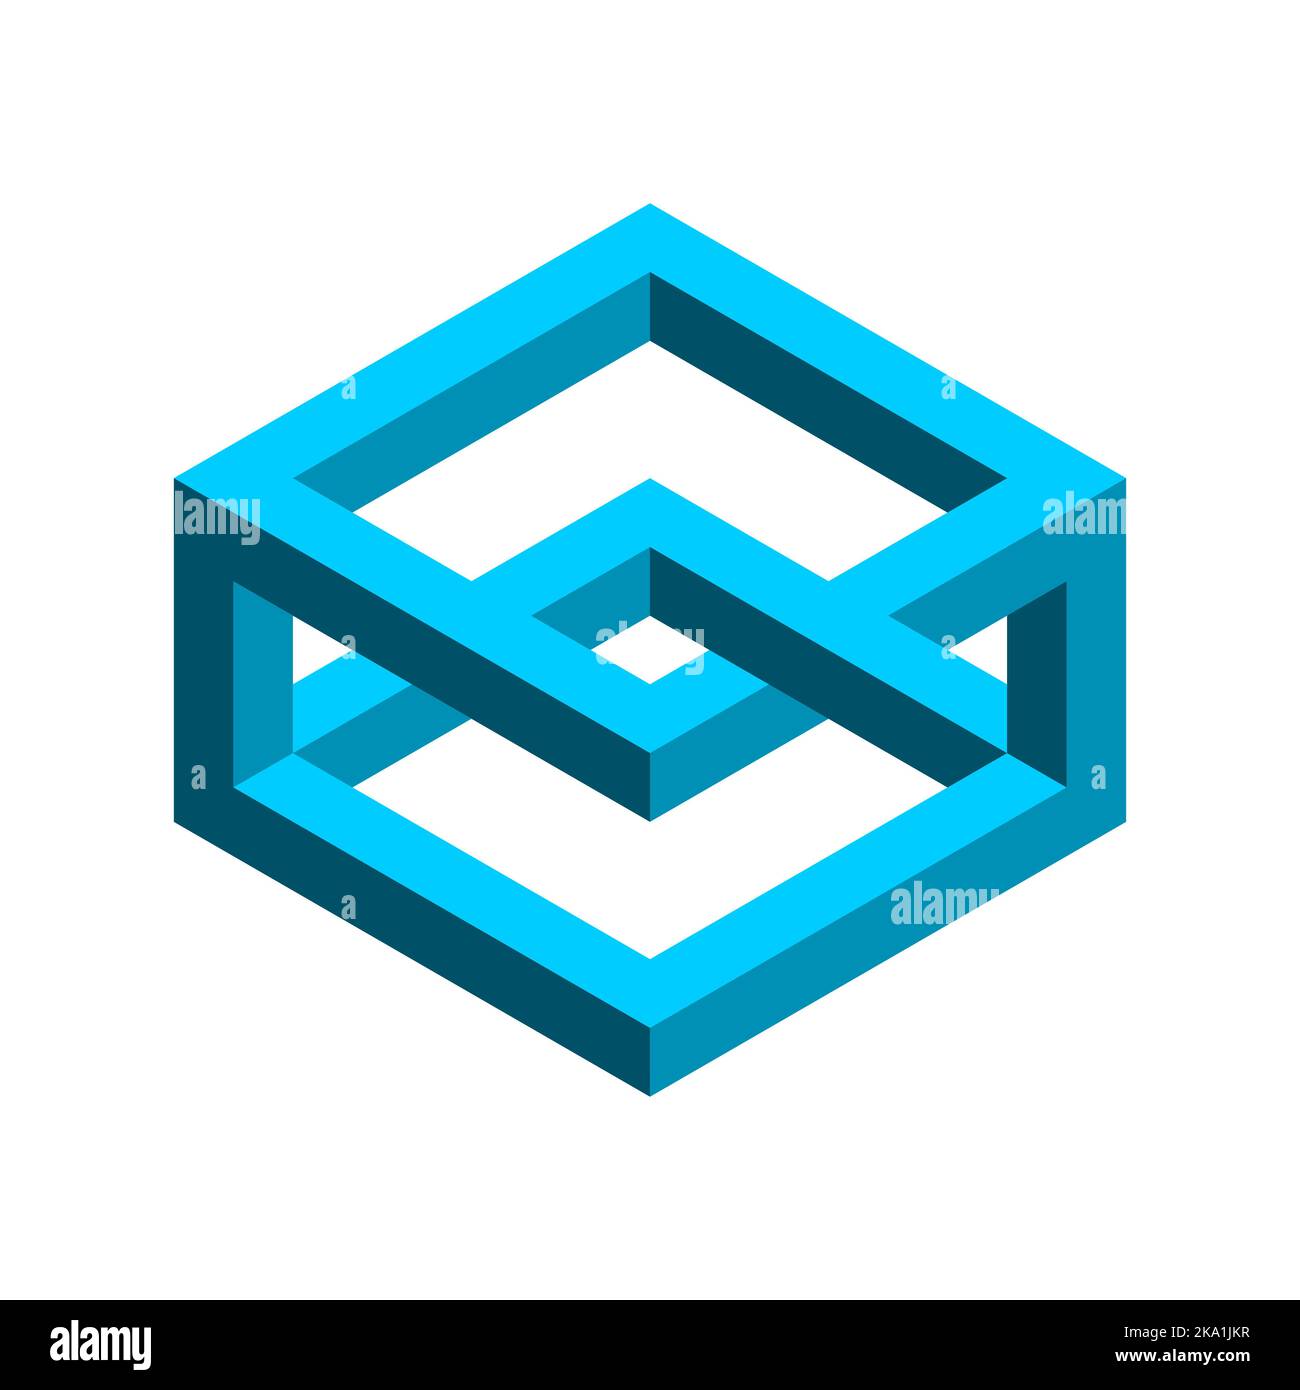 Blu rettangolo impossibile. Oggetto geometrico di Esher penrose. 3D forma isometrica con lati sovrapposti. Illusione ottica, percezione visiva, op art Illustrazione Vettoriale